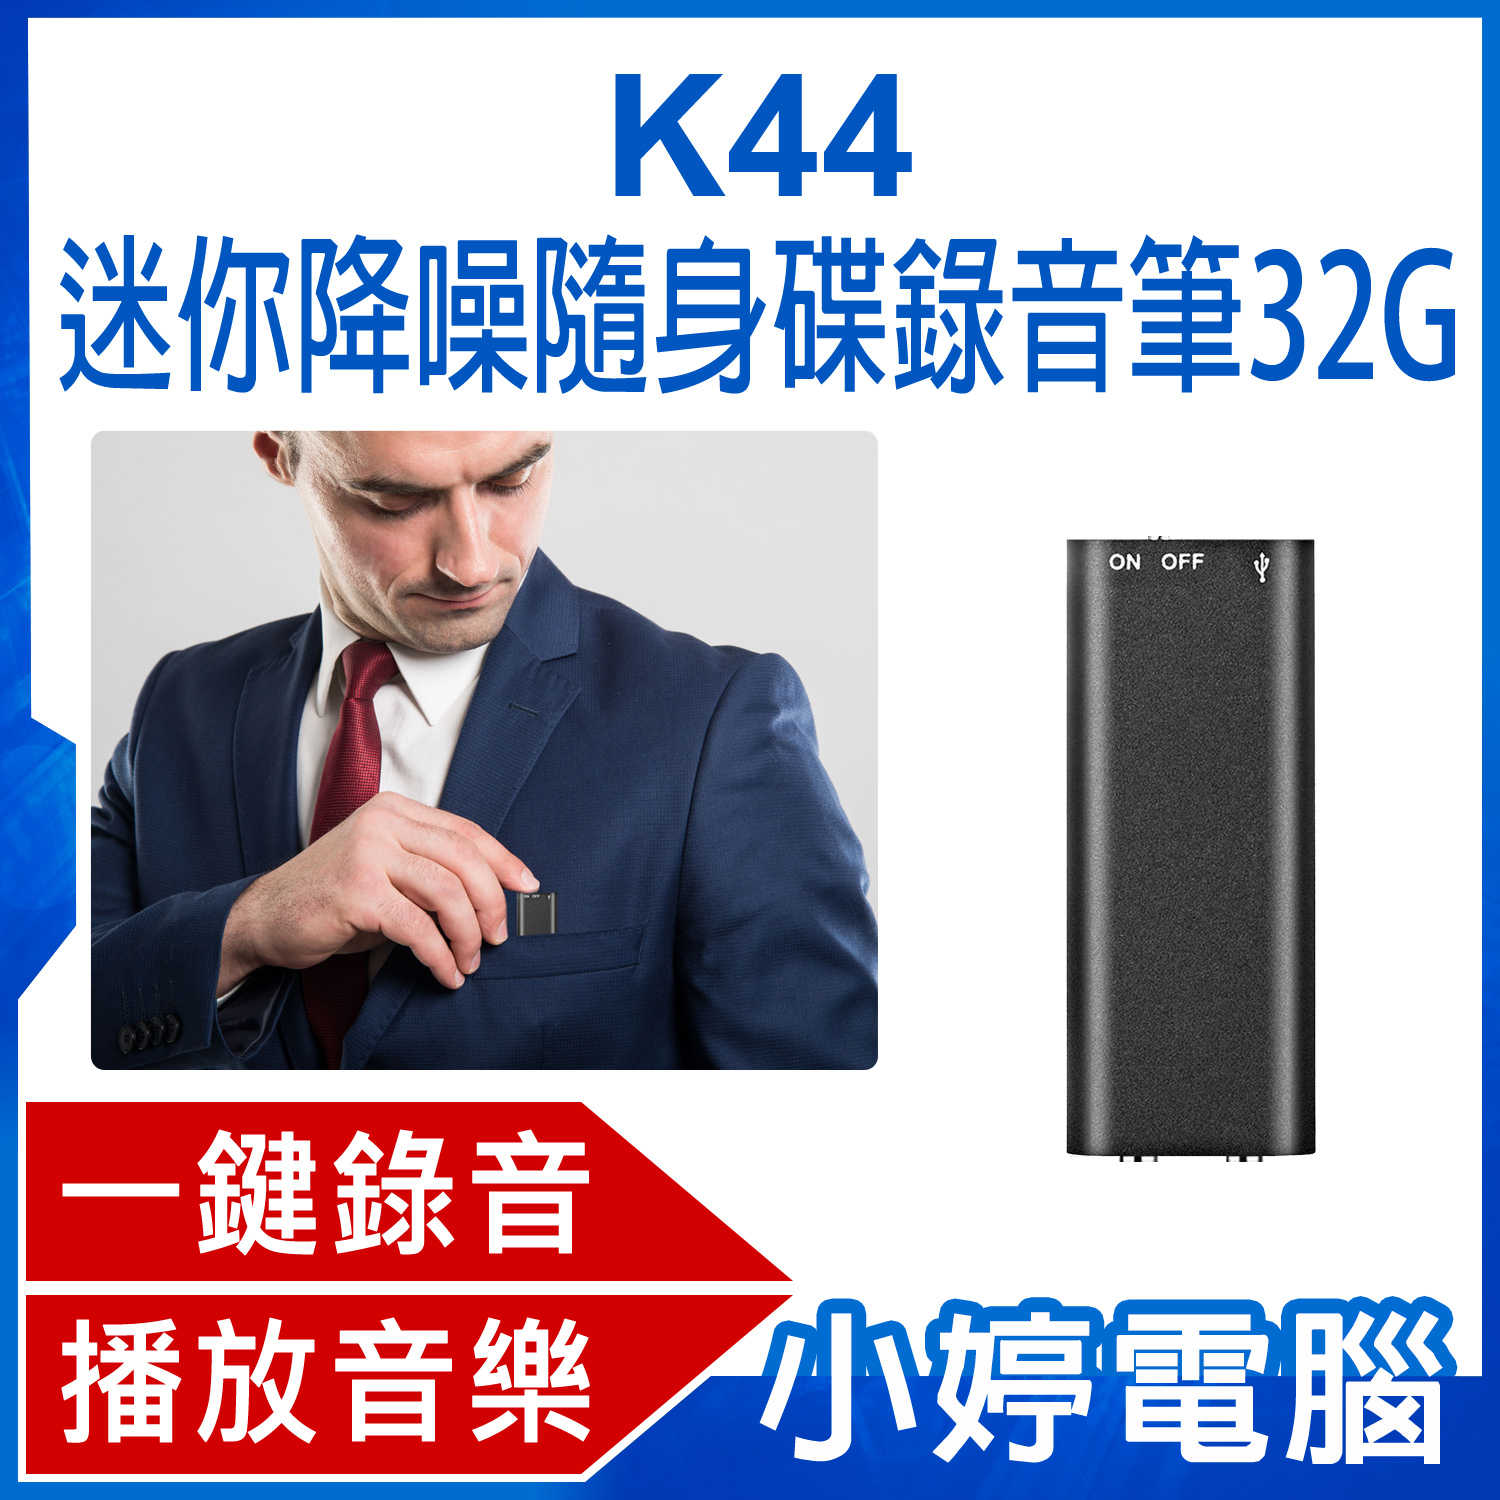 【小婷電腦】K44 迷你降噪隨身碟錄音筆 32G 高清降噪音微型錄音器 小型隨身錄音機 一鍵錄音 聲控錄音